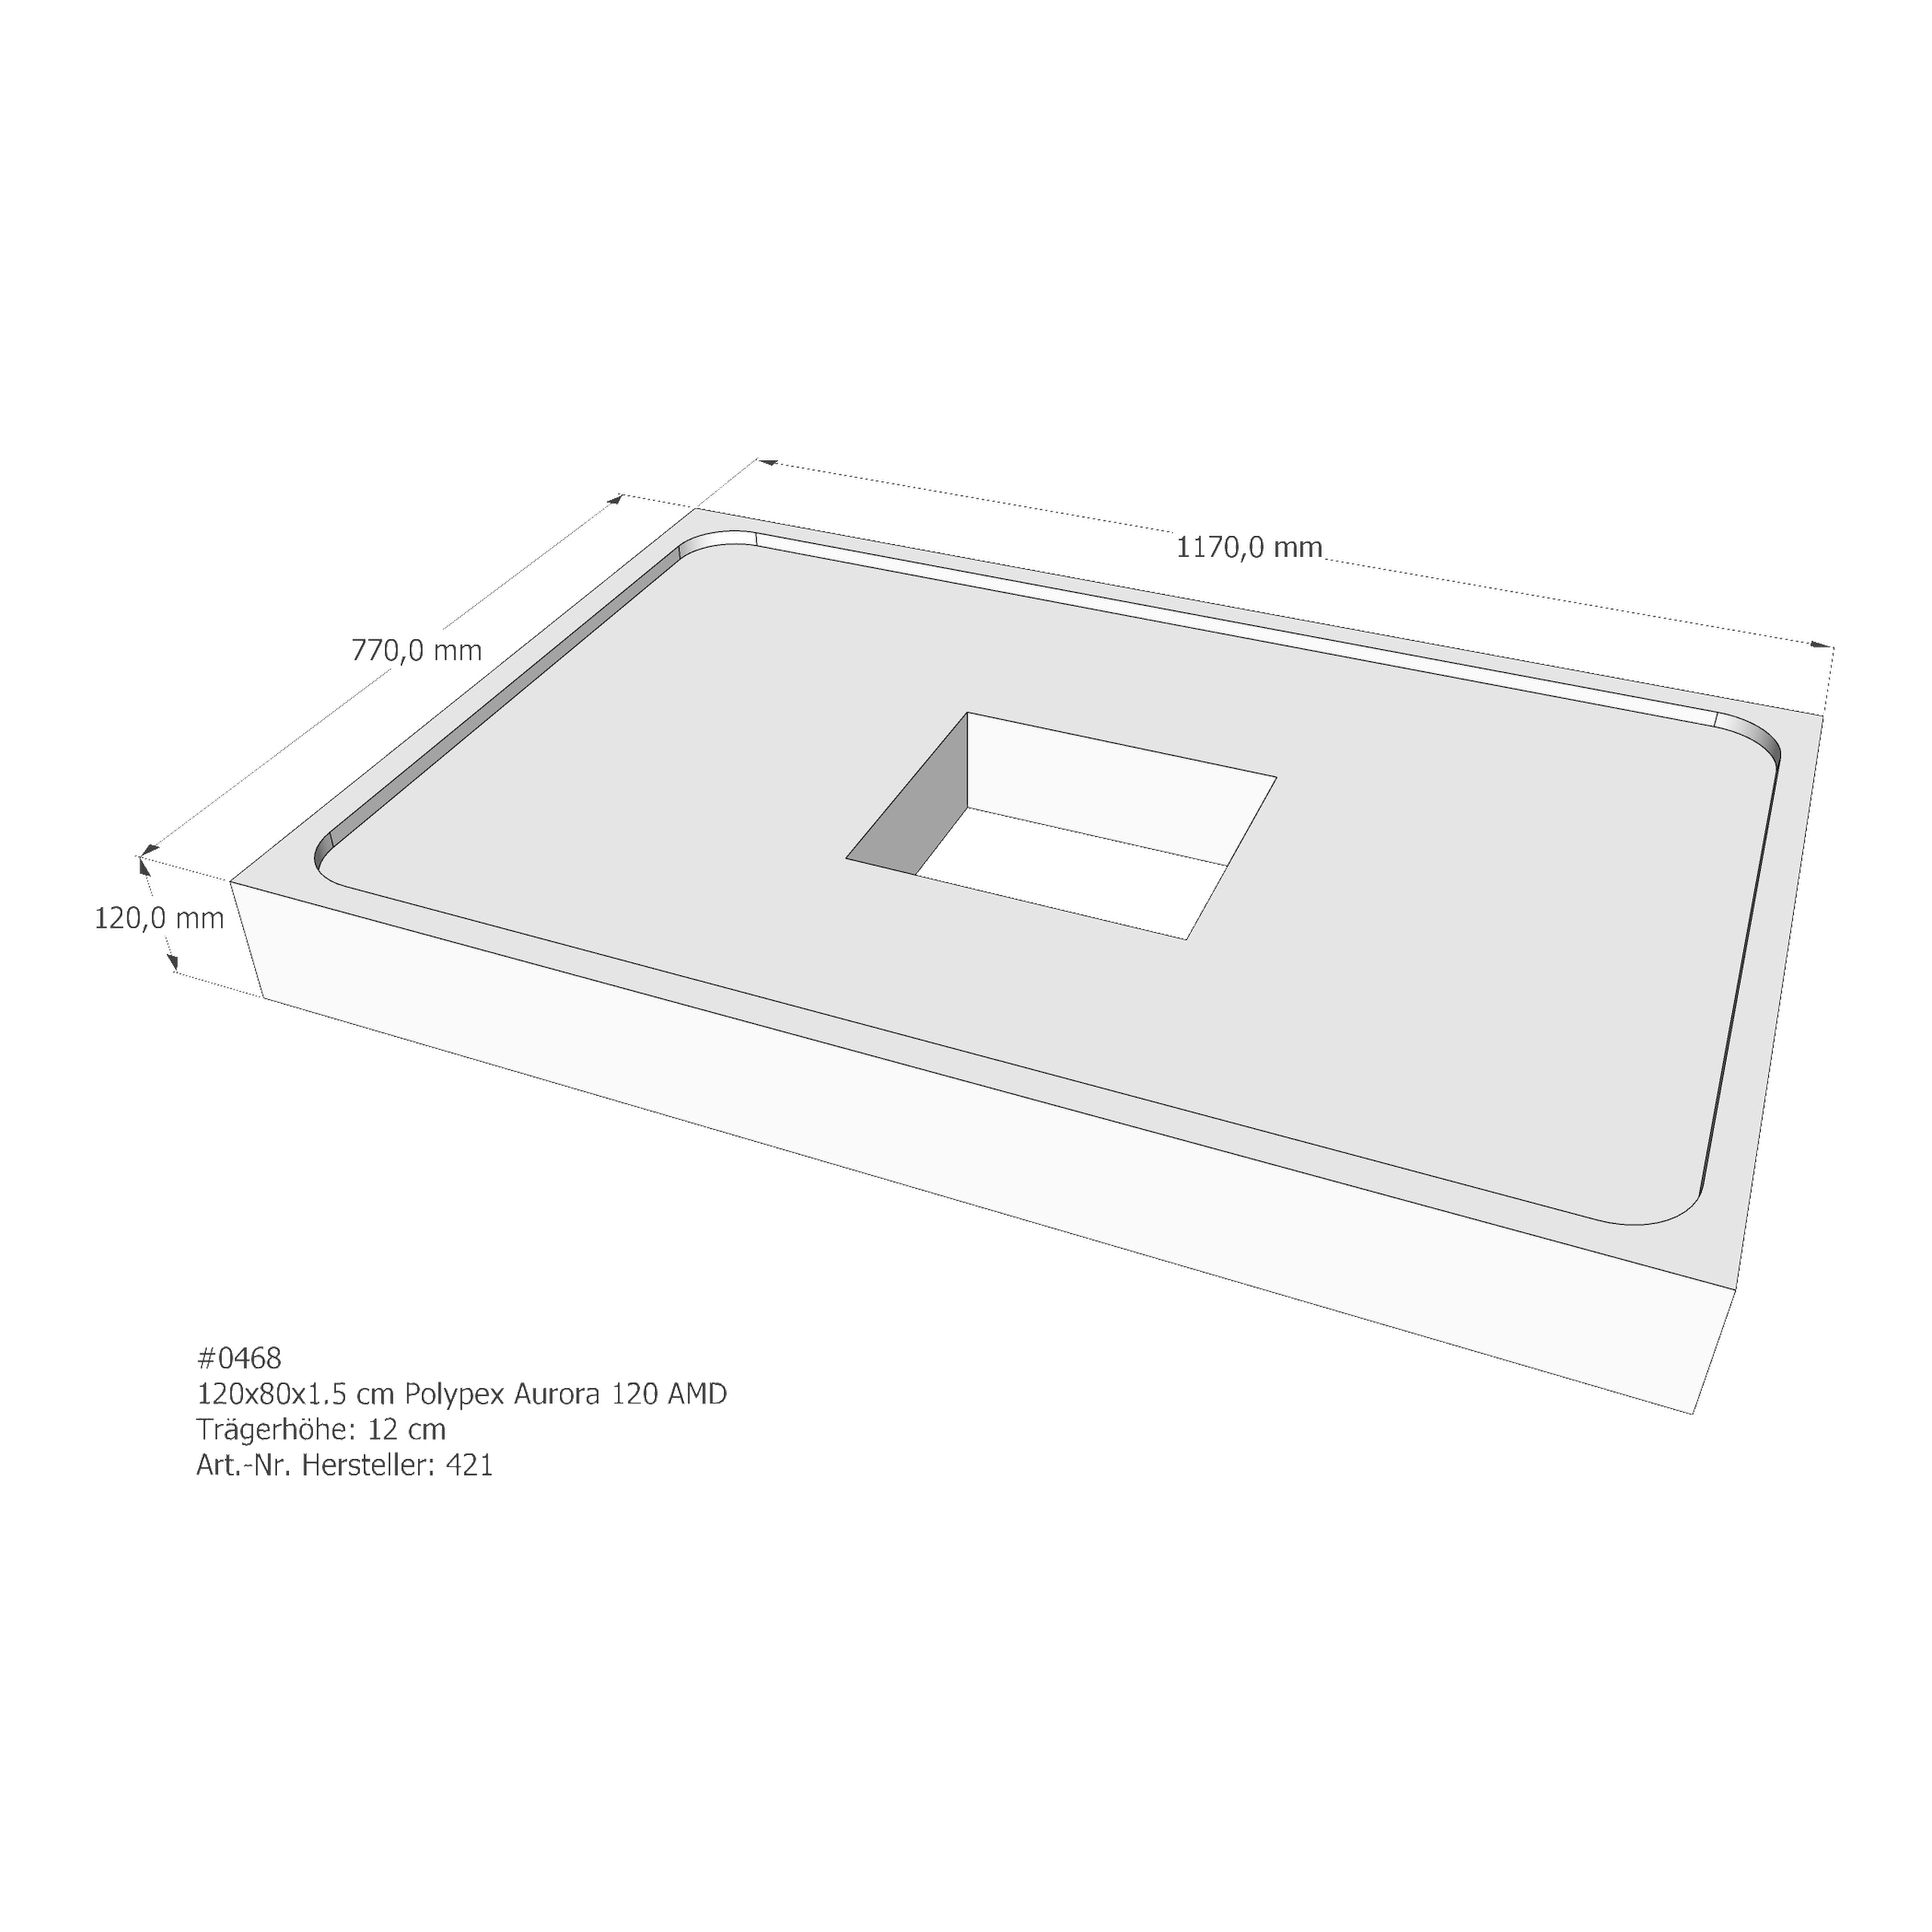 Duschwannenträger für Polypex Aurora 120 120 × 80 × 1,5 cm